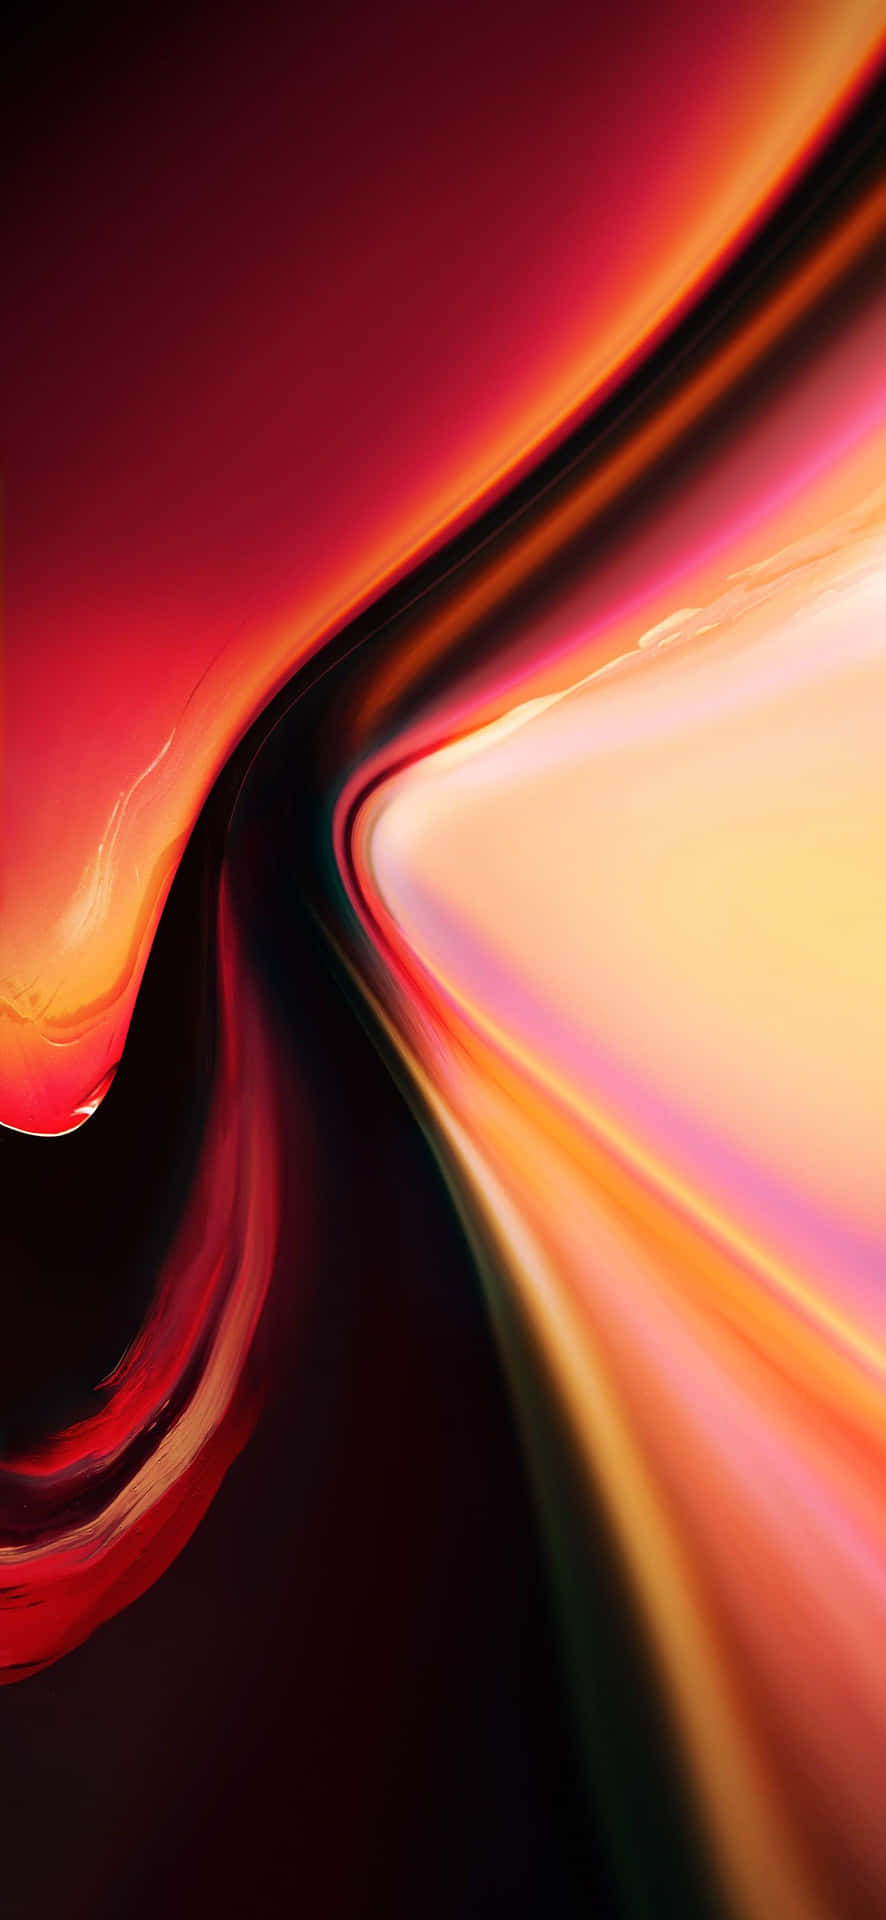 Unfondo Abstracto Rojo Y Naranja Con Un Efecto De Desenfoque En El Fondo Fondo de pantalla